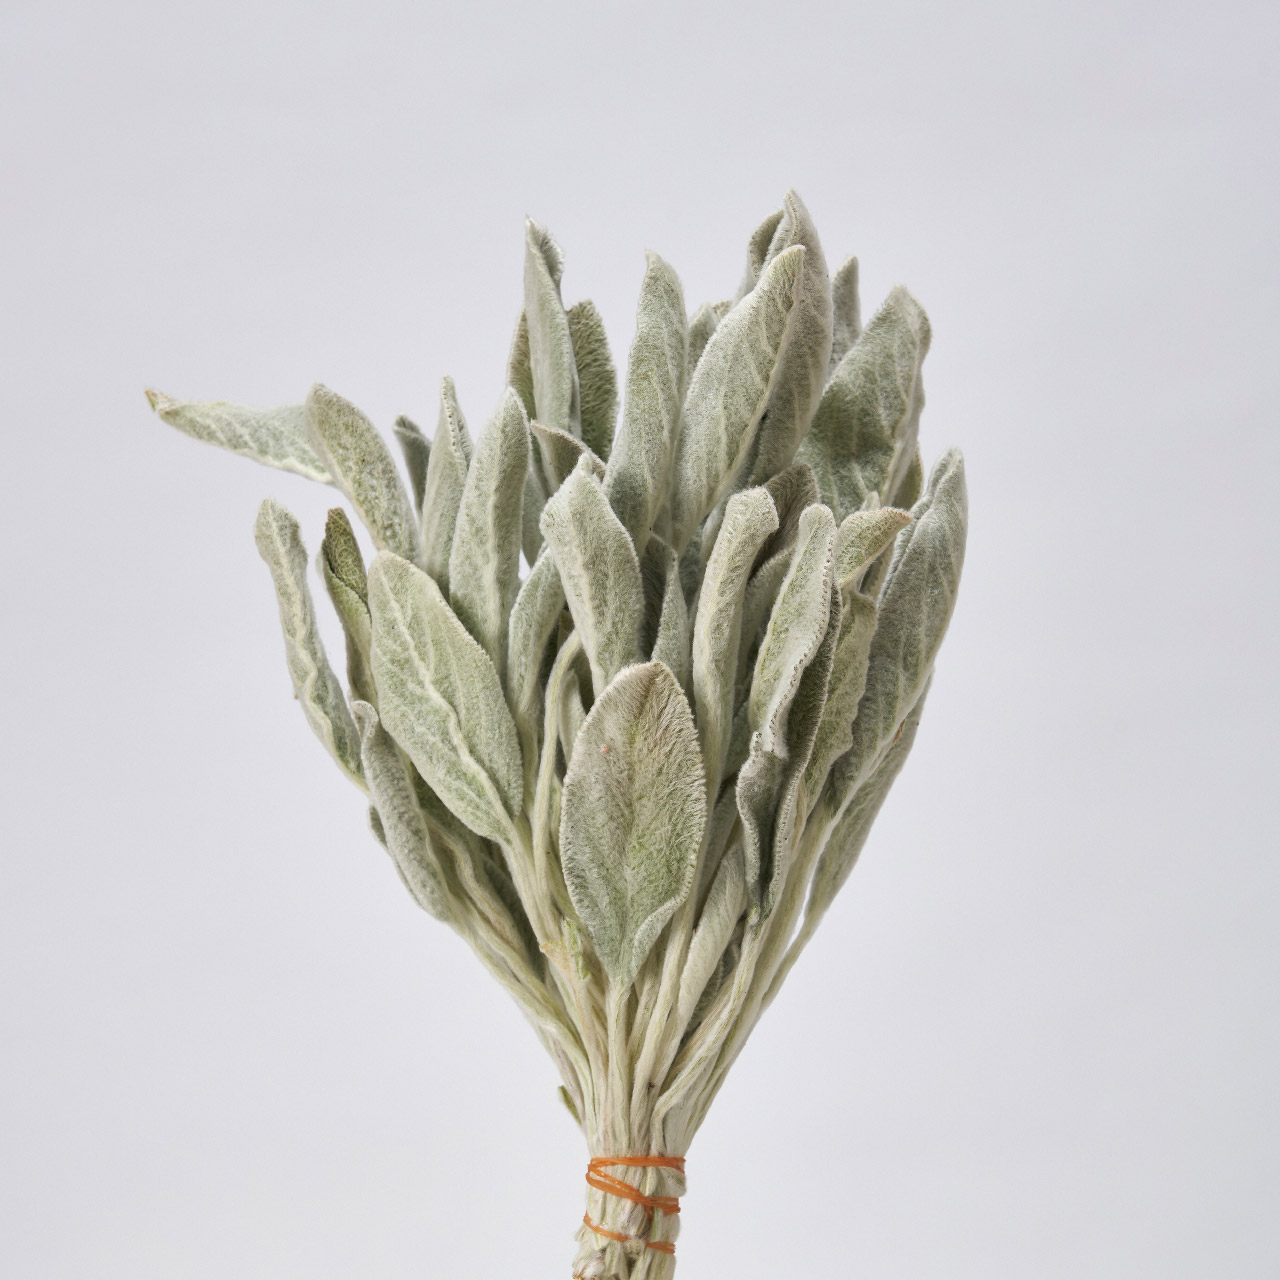 マイフラ 通販 風の花 ラムズイヤー リーフ ドライフラワー ナチュラル Dn 長さ 約25cm ドライフラワー ナチュラル素材 全国にmagiq 花器 花資材などをお届けします